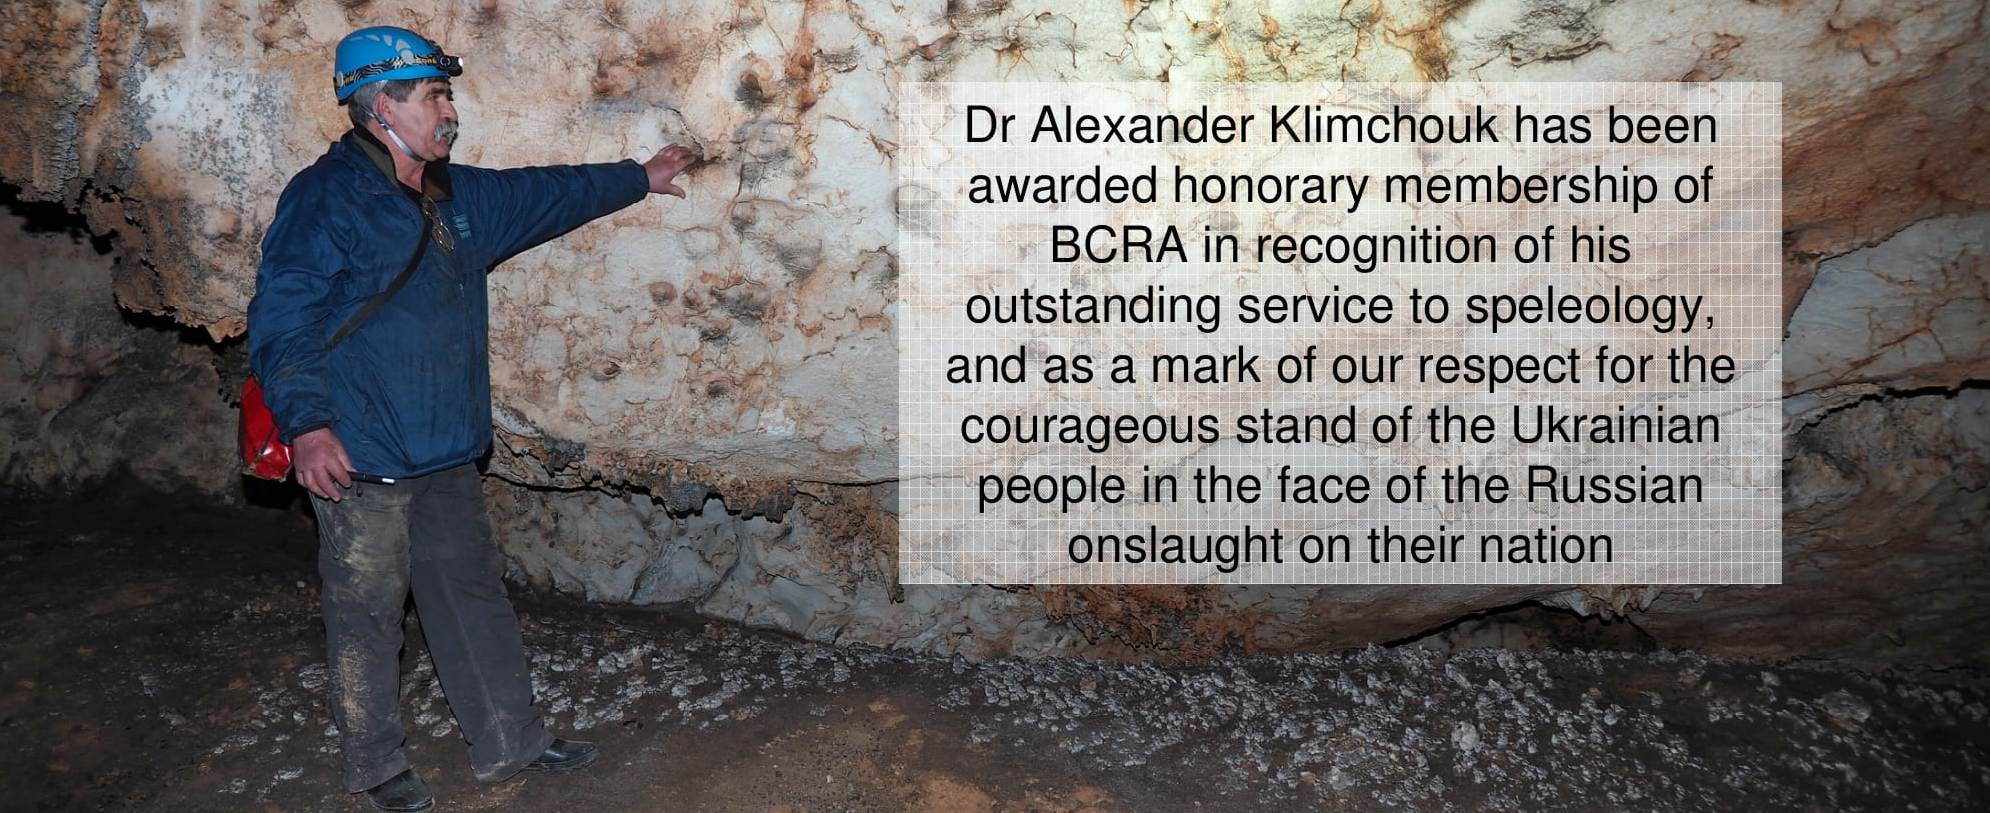 Hon Mbr award to Alexander Klimchouk.jpg